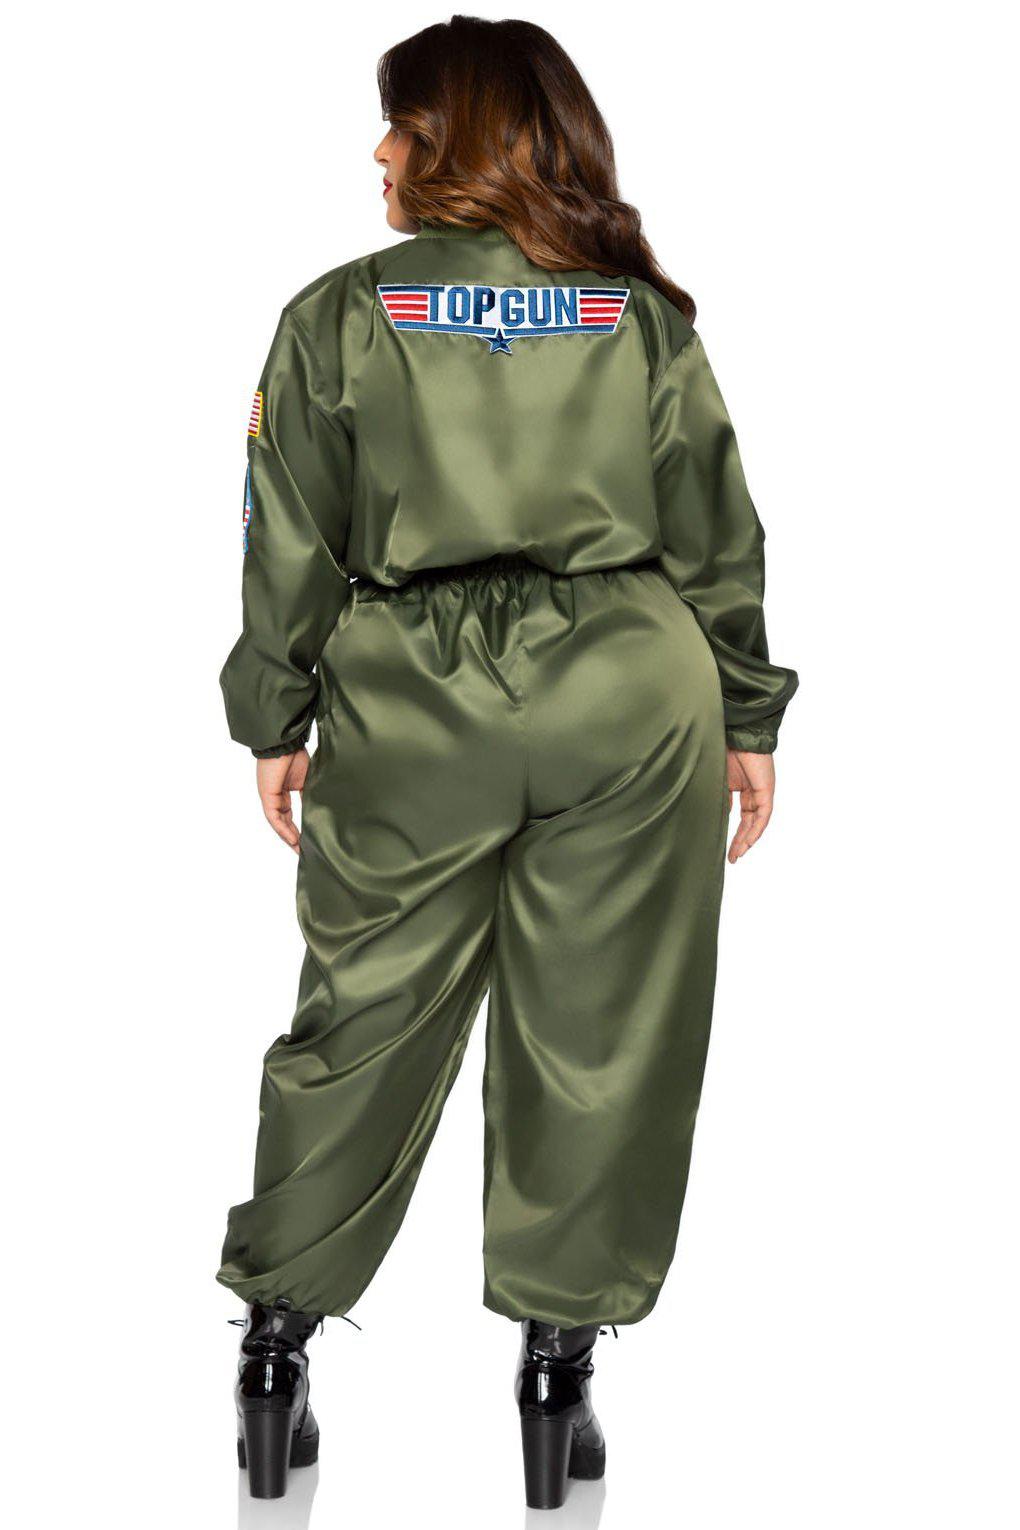 Plus Size Top Gun Costume Flight Suit-Military Costumes-Leg Avenue-SEXYSHOES.COM